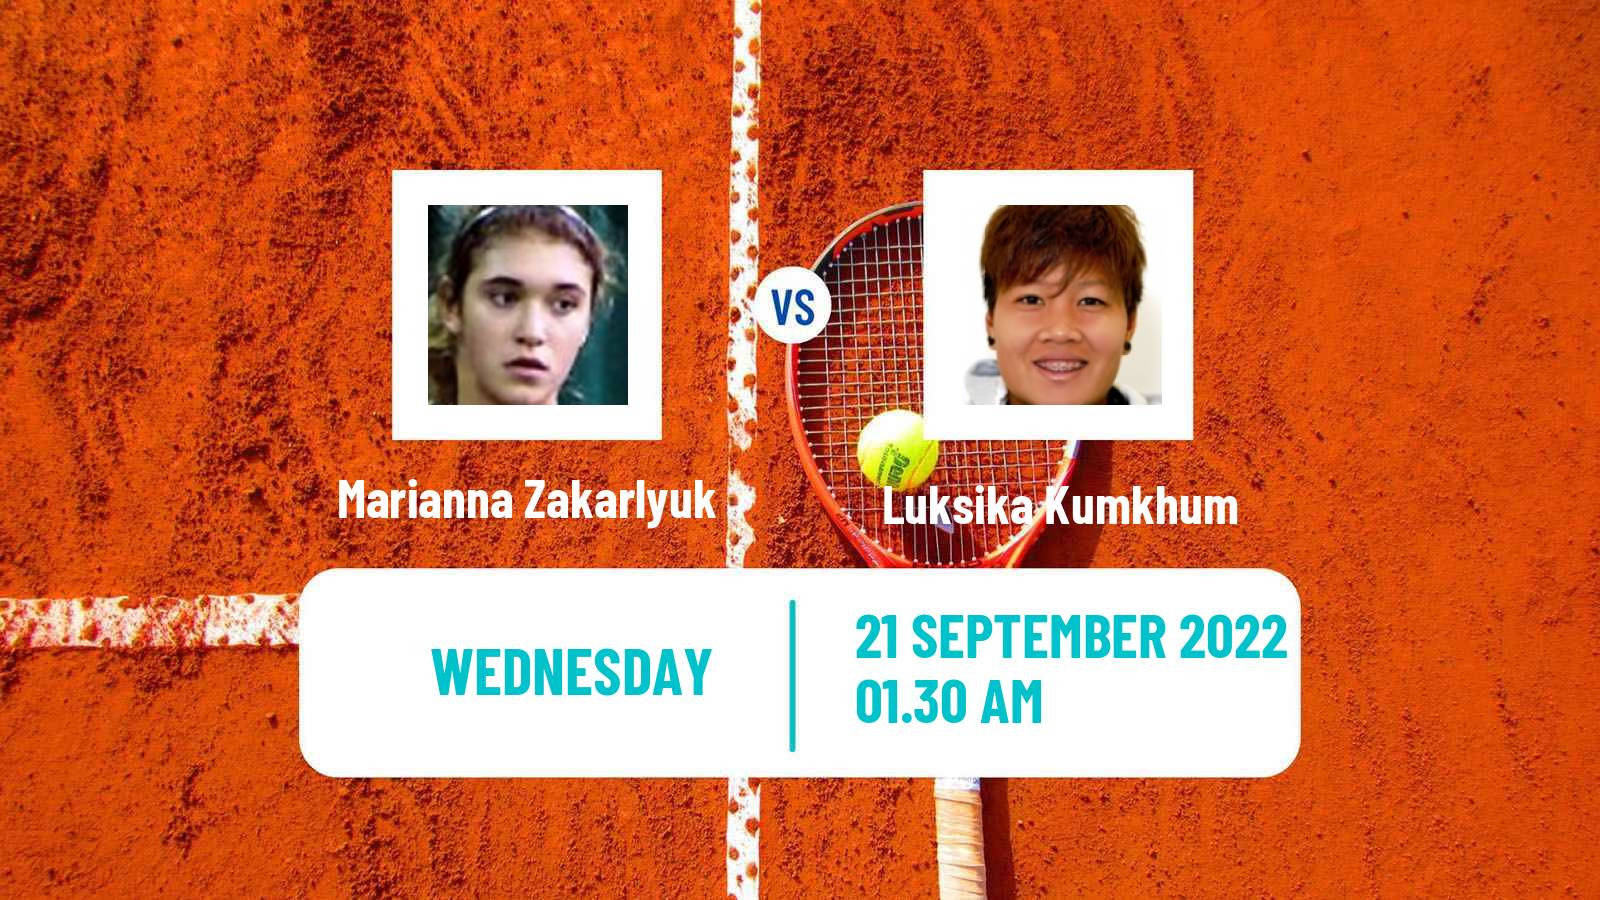 Tennis ITF Tournaments Marianna Zakarlyuk - Luksika Kumkhum